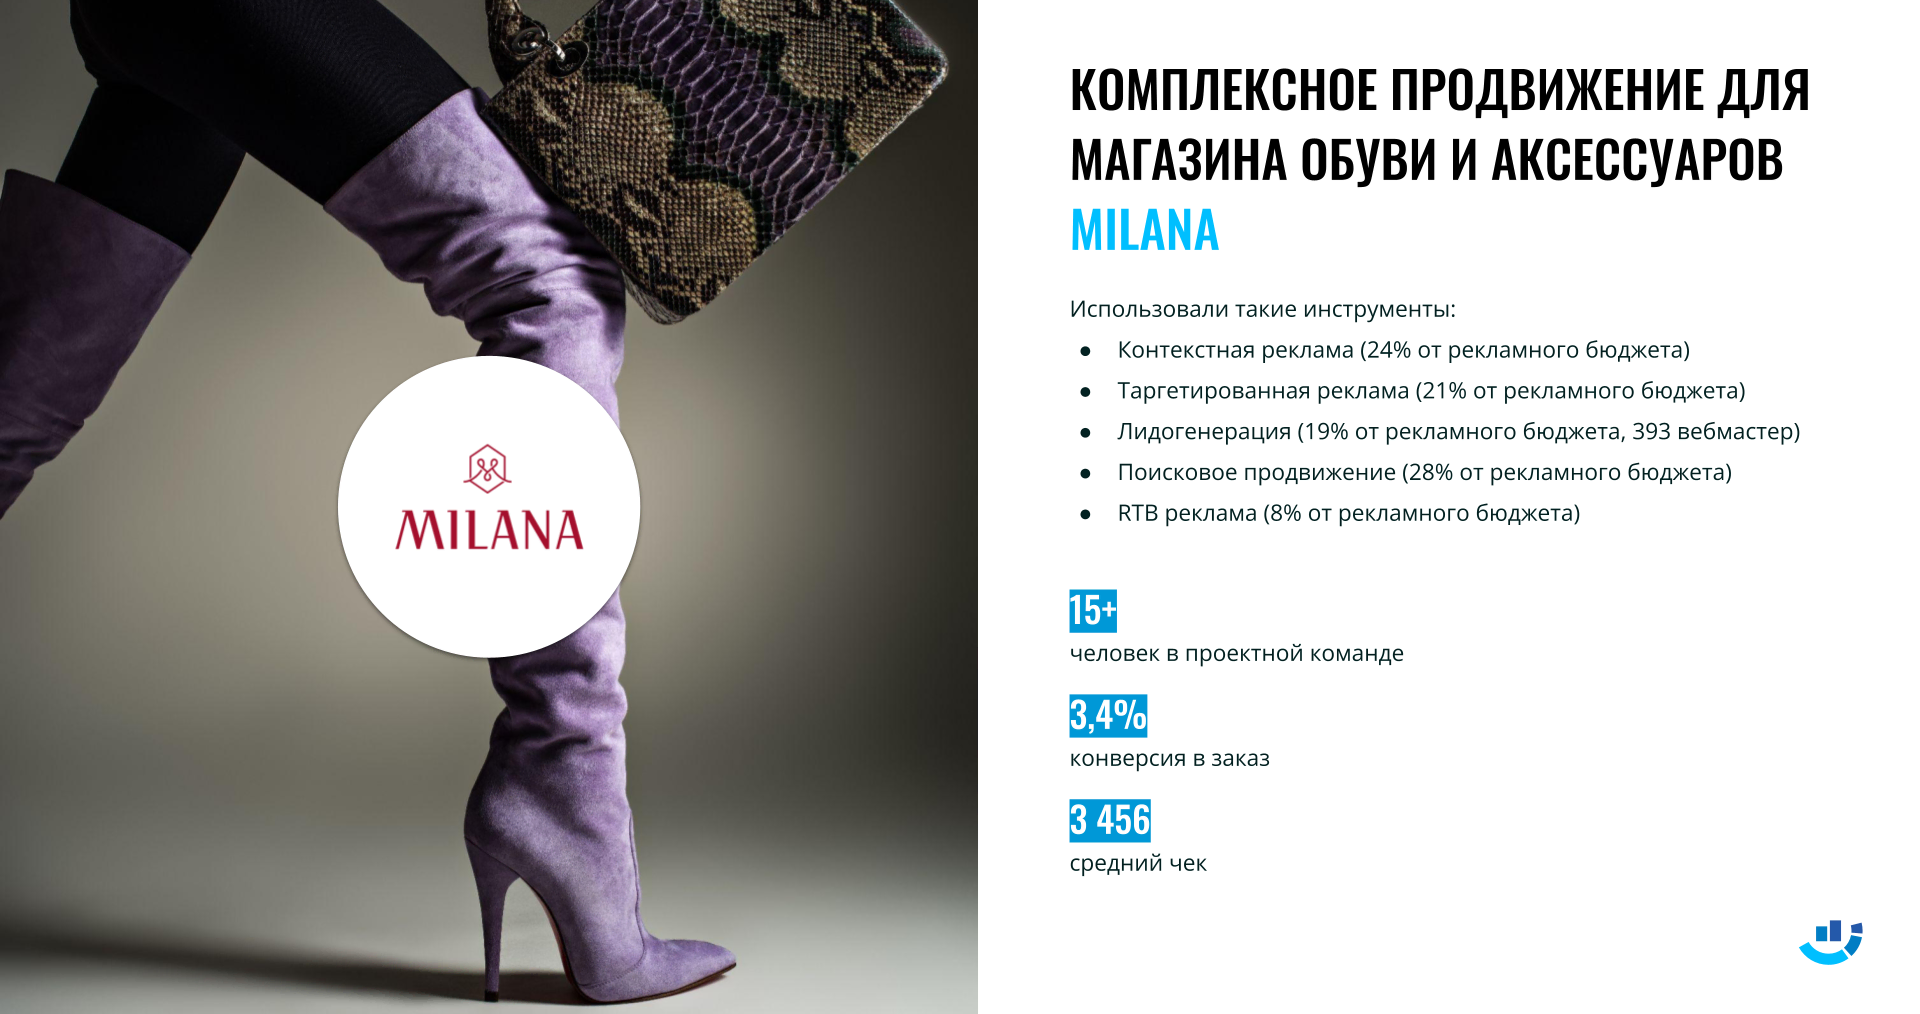 [Кейс] Обувь. Подняли средний чек до 3 456 рублей. Комплексное продвижение интернет-магазина обуви | кейс, комплексное_продвижение, контекстная_реклама, магазин_обуви, обувь